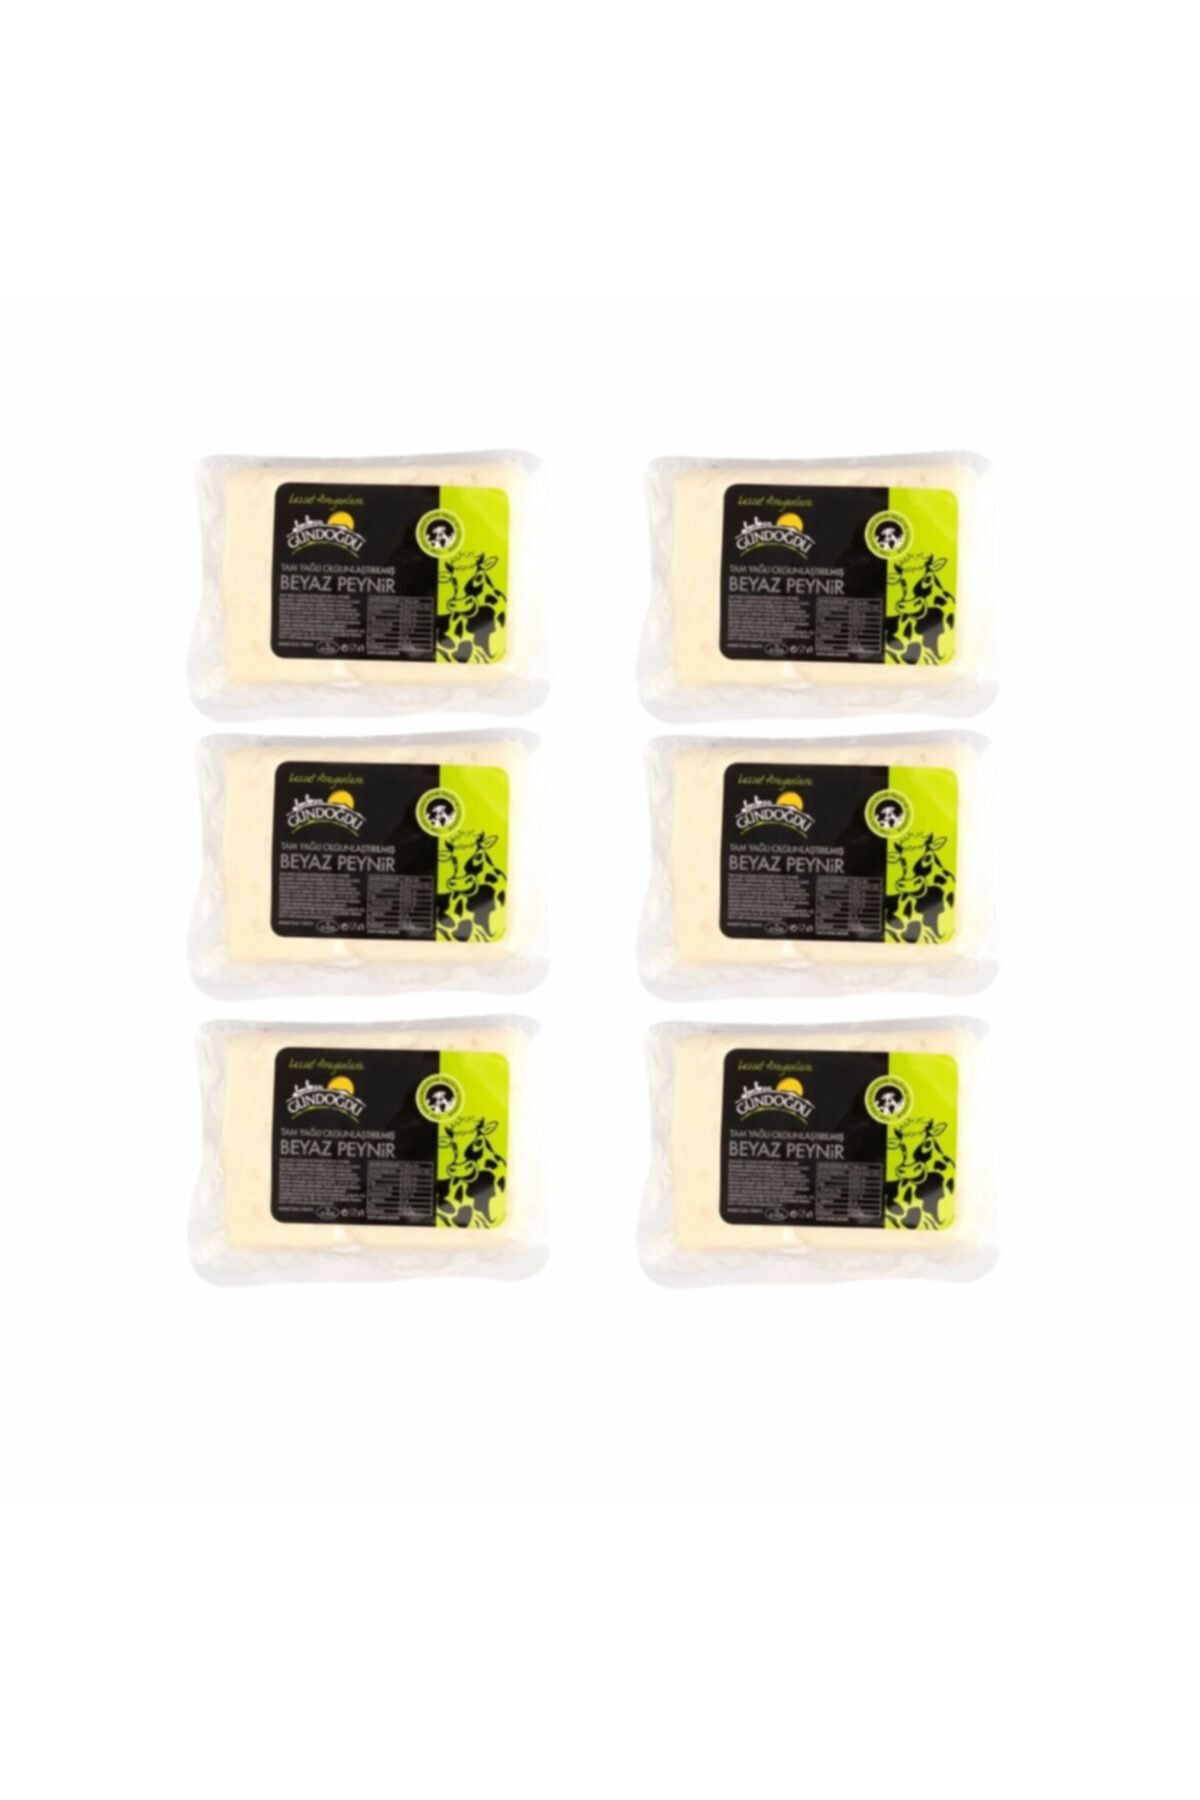 Gündoğdu Beyaz Peynir Yumuşak Kıvam Ortalama 3900 gr